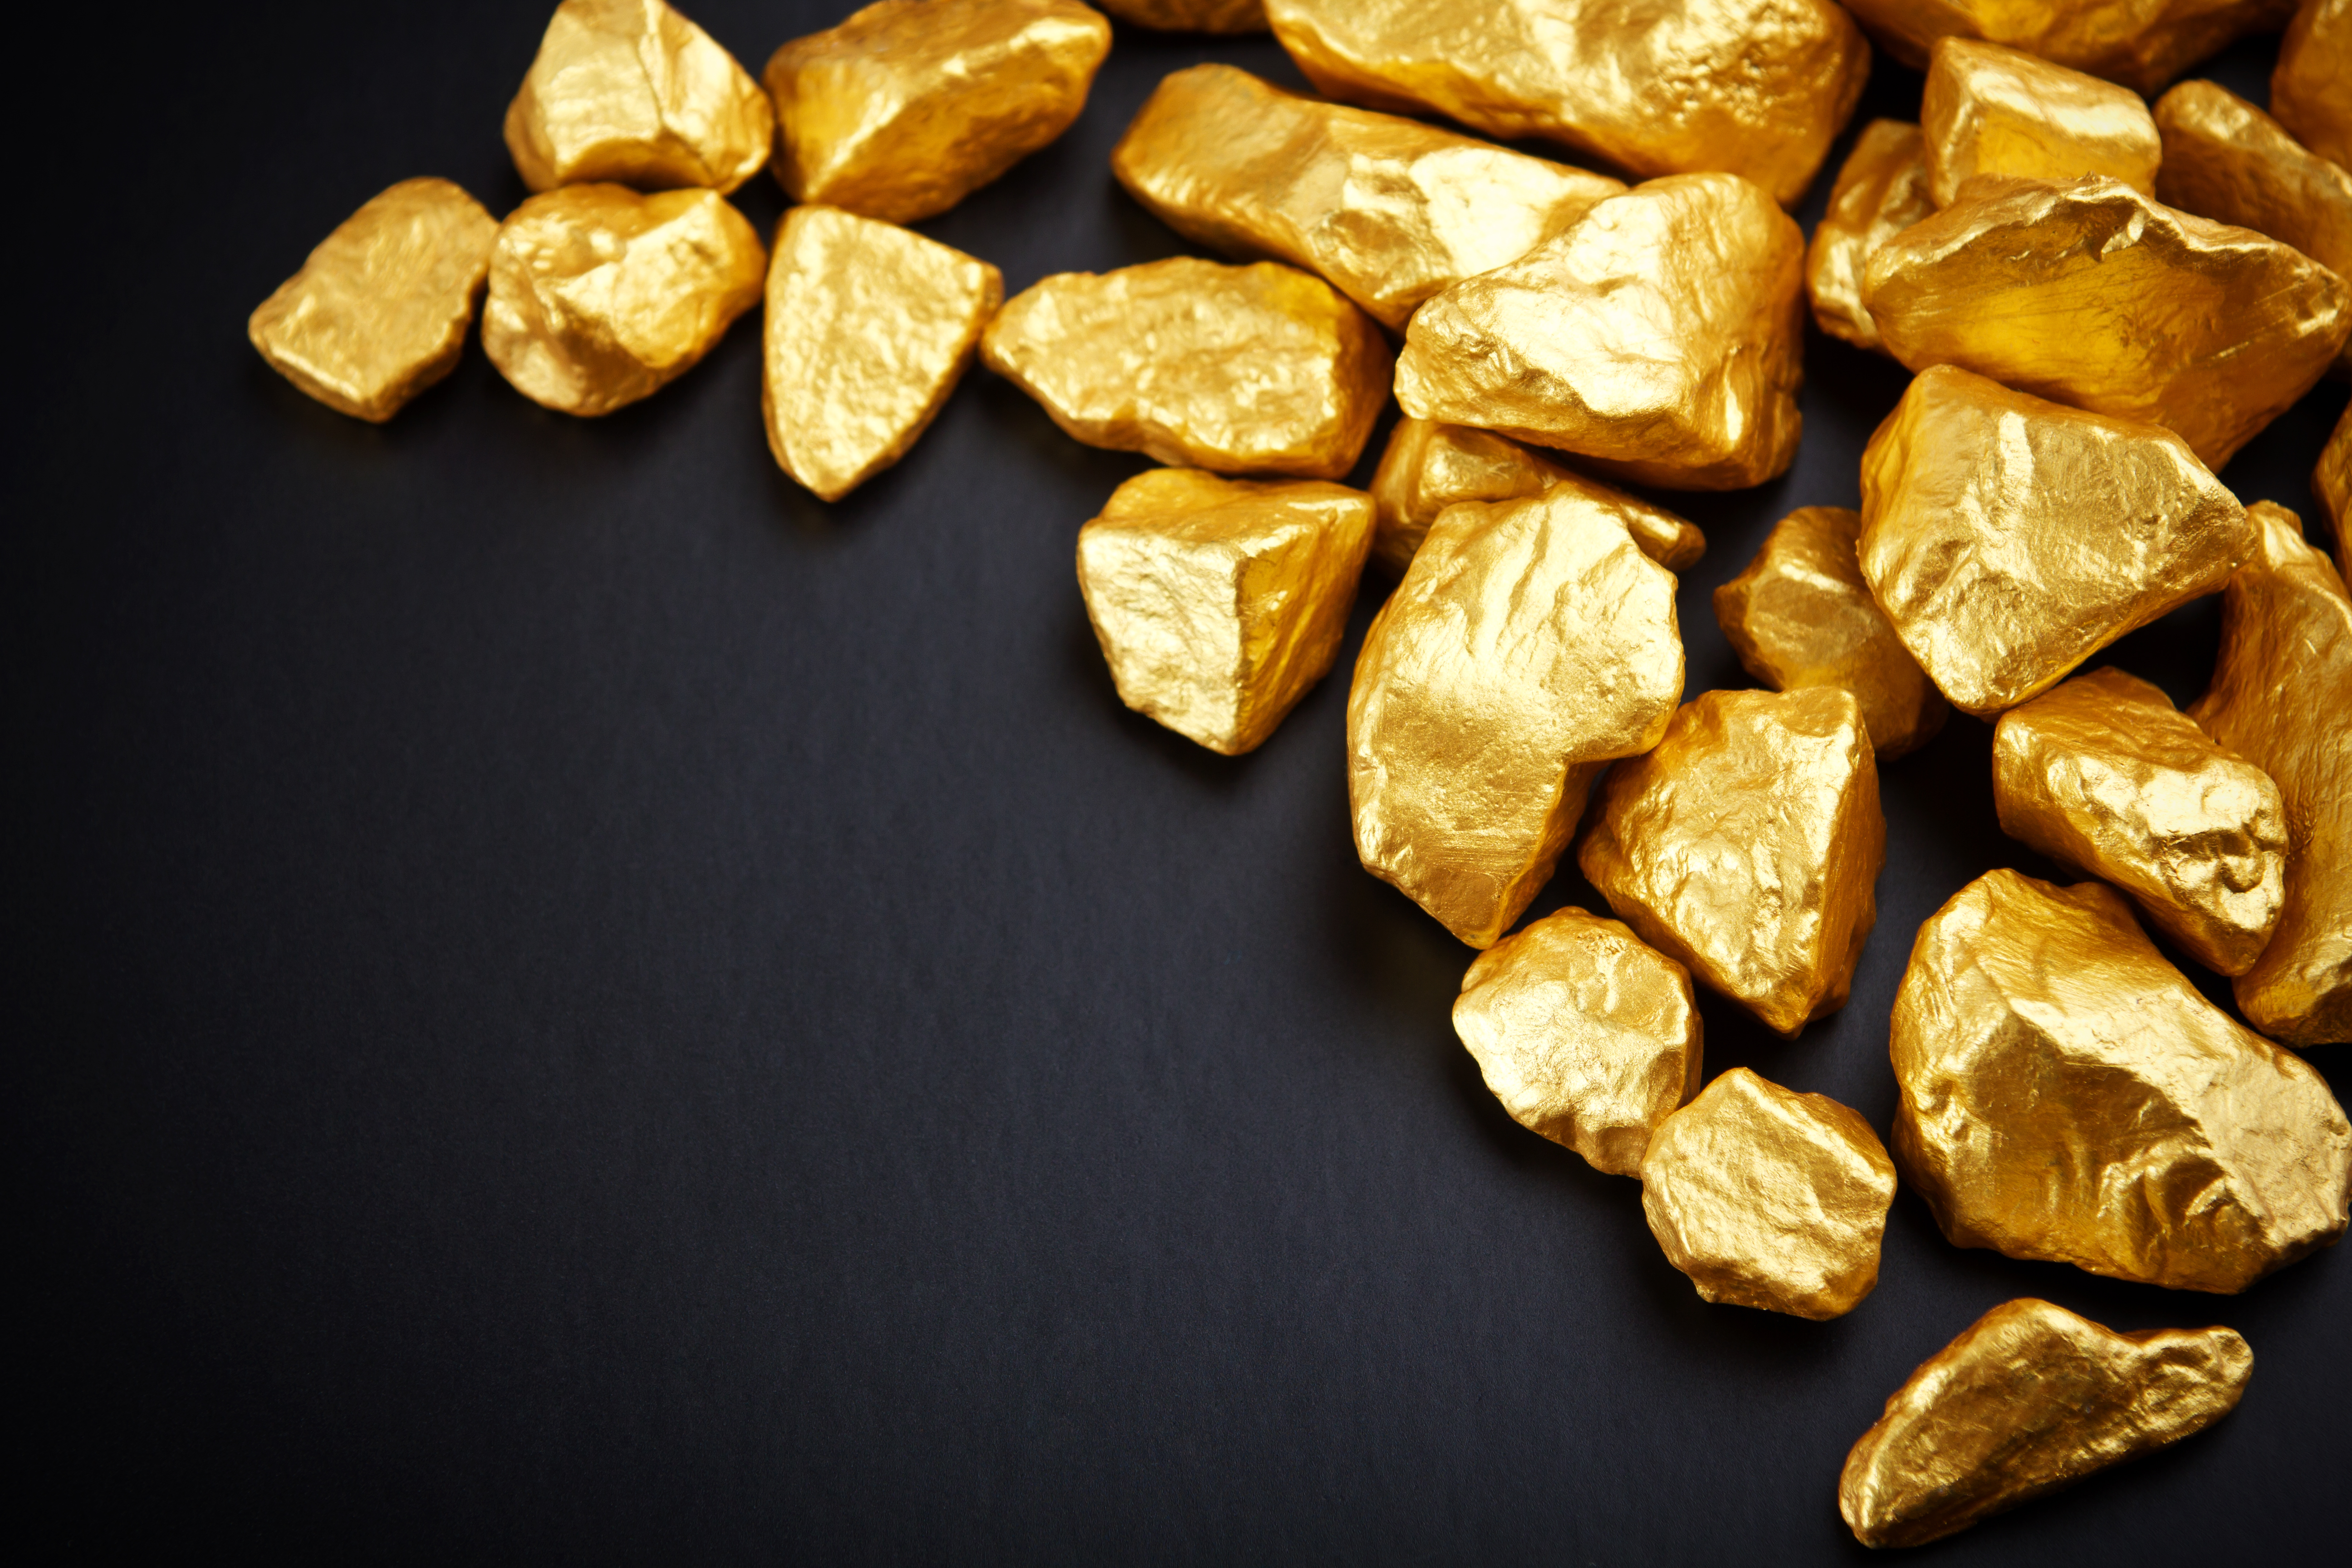 Holländische Zentralbank: Gold wird nach kommendem globalem Finanzkollaps der Standard!